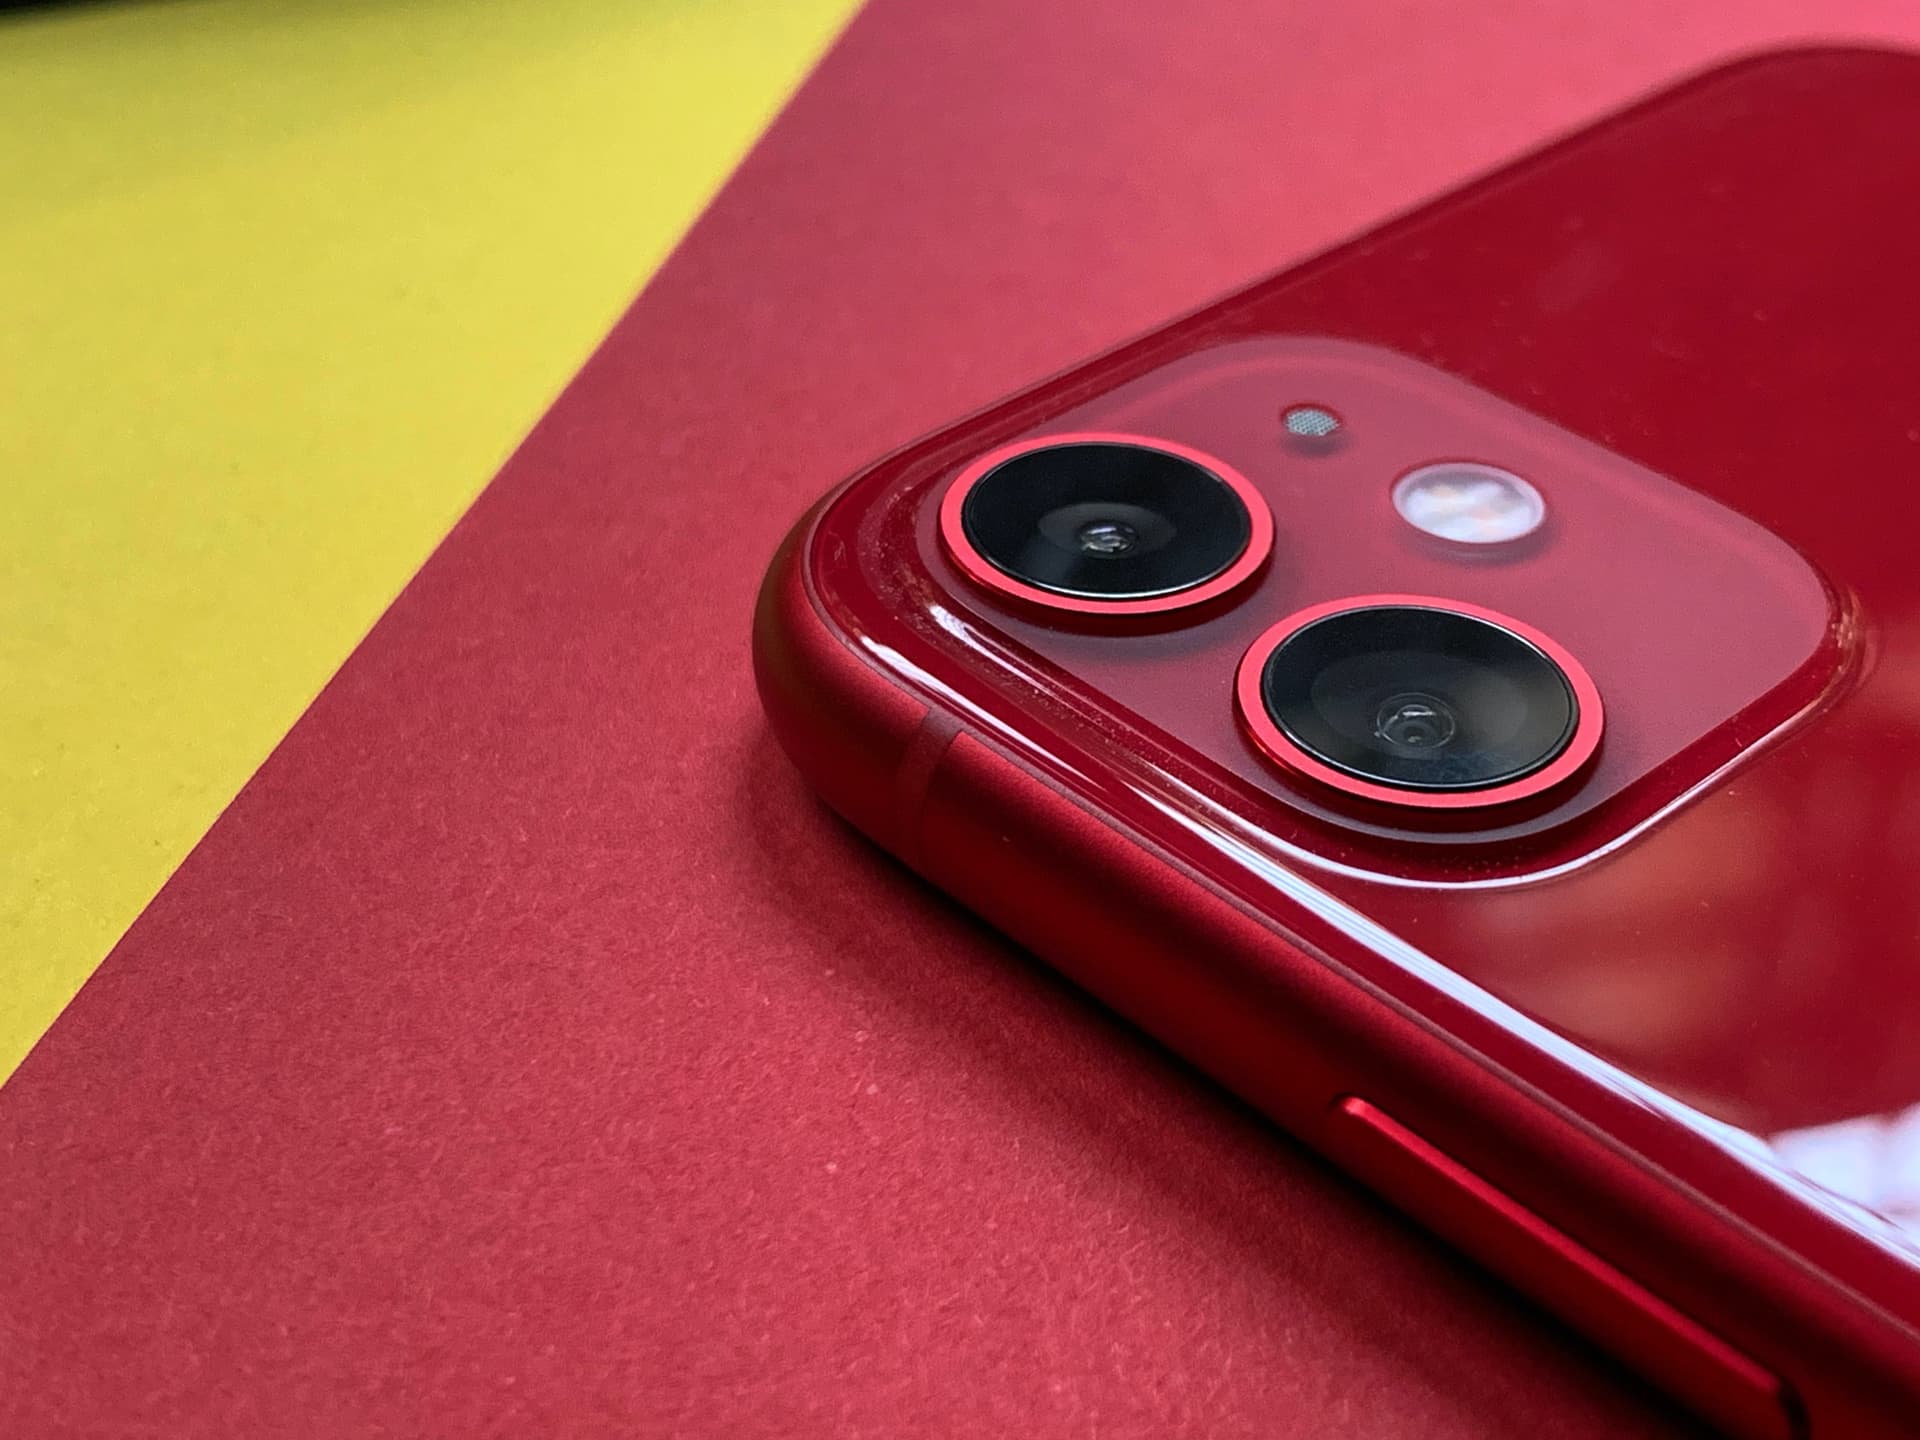 Darstellung eines roten iPhones